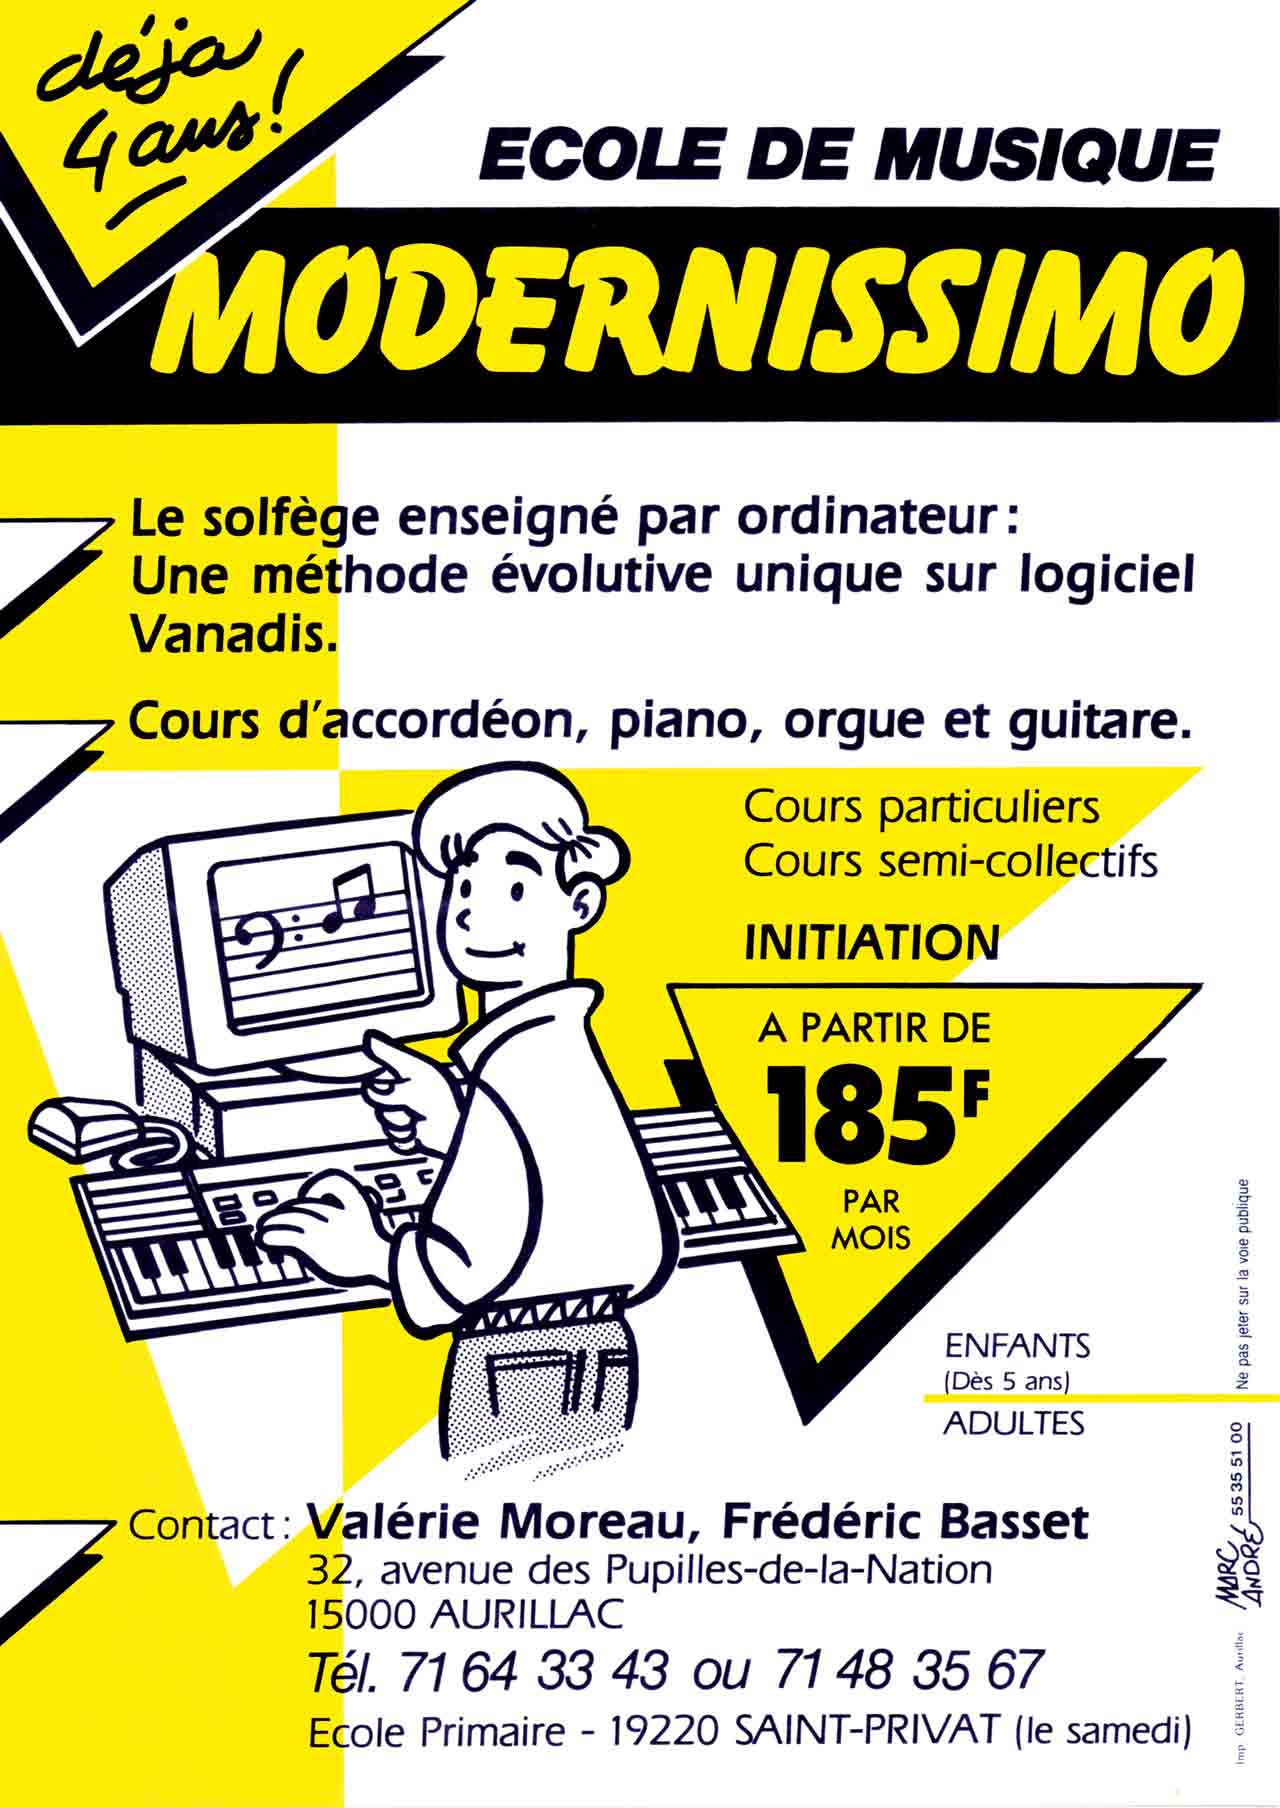 Flyer Modernissimo 1991 - Marc-André - BD Illustration Graphisme Limoges.